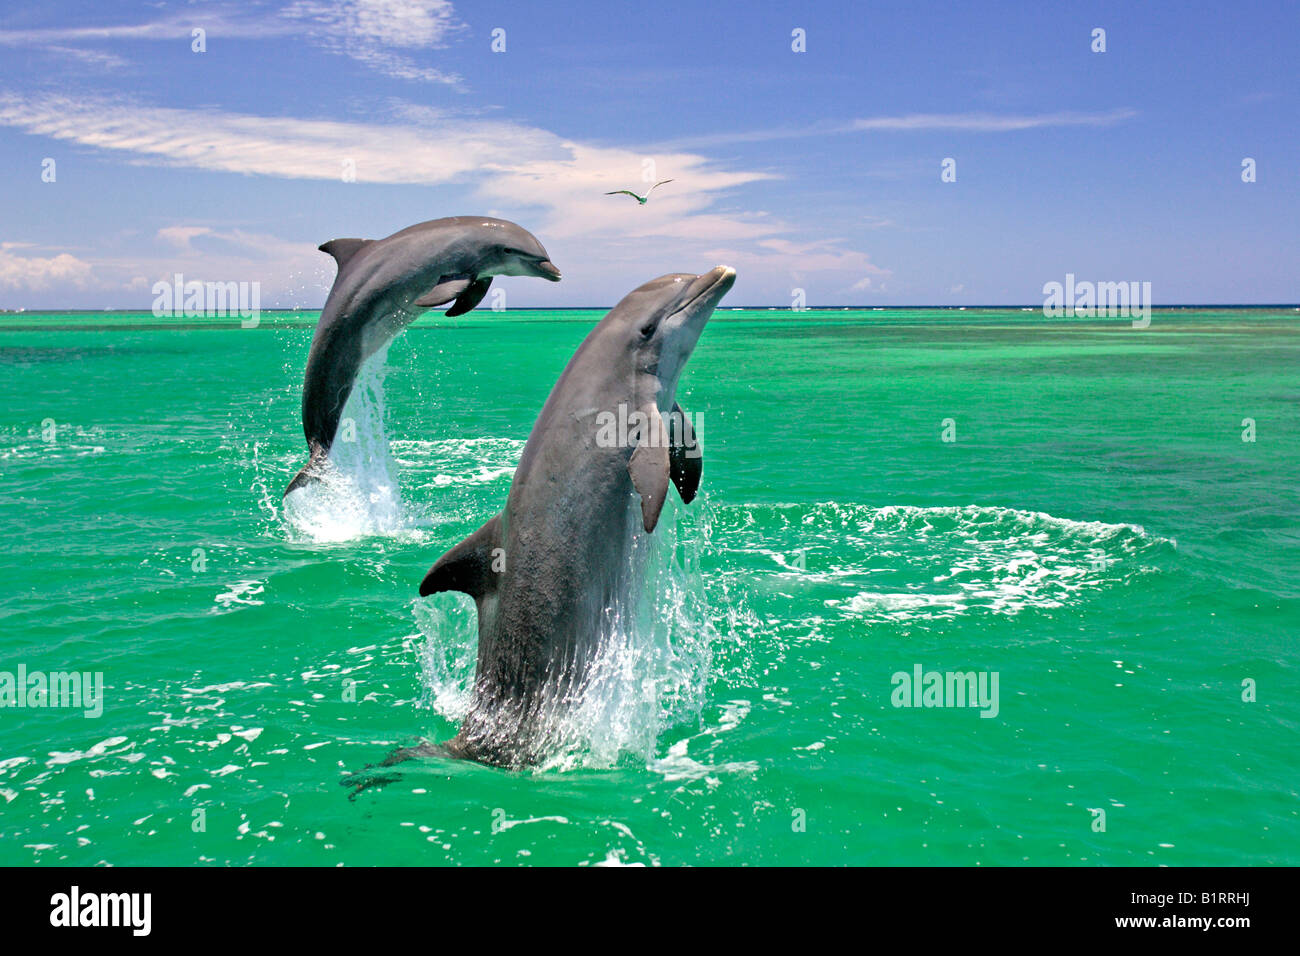 Una pareja adulta de los delfines nariz de botella (Tursiops truncatus) saltando fuera del agua, el Caribe, Roatán, Honduras, América Central Foto de stock